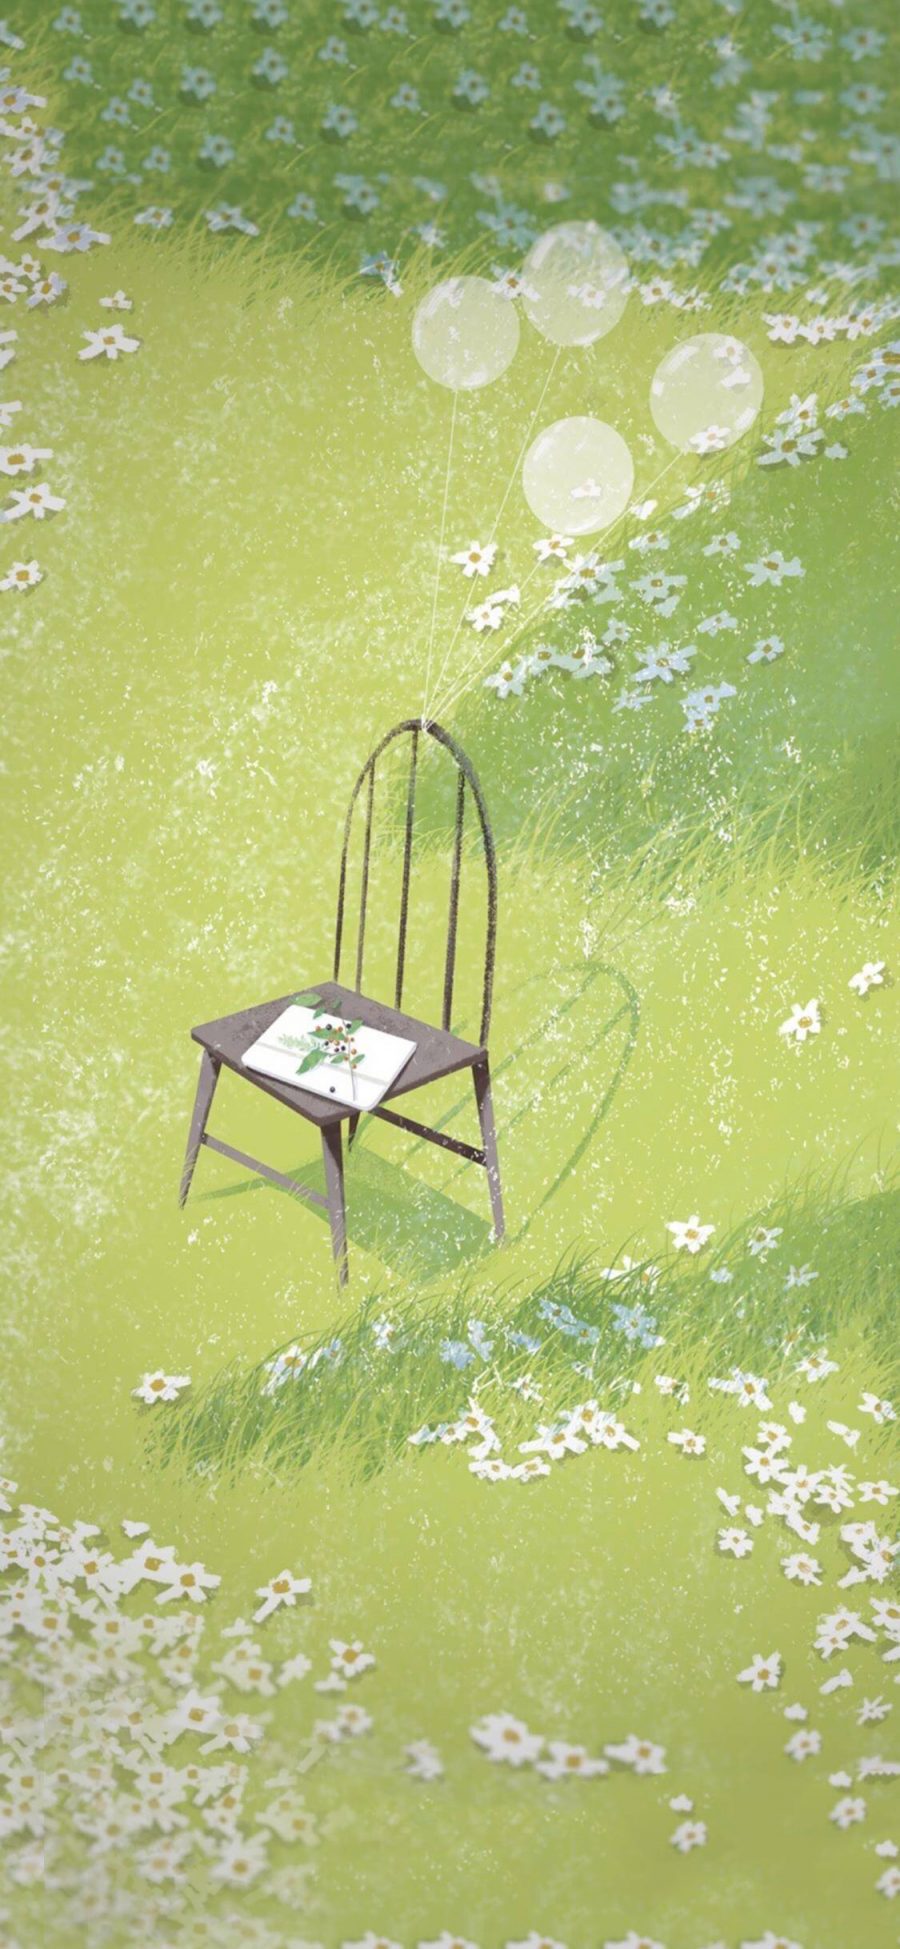 [2436×1125]风景 插图 草地 椅子 气球 绿色 苹果手机壁纸图片